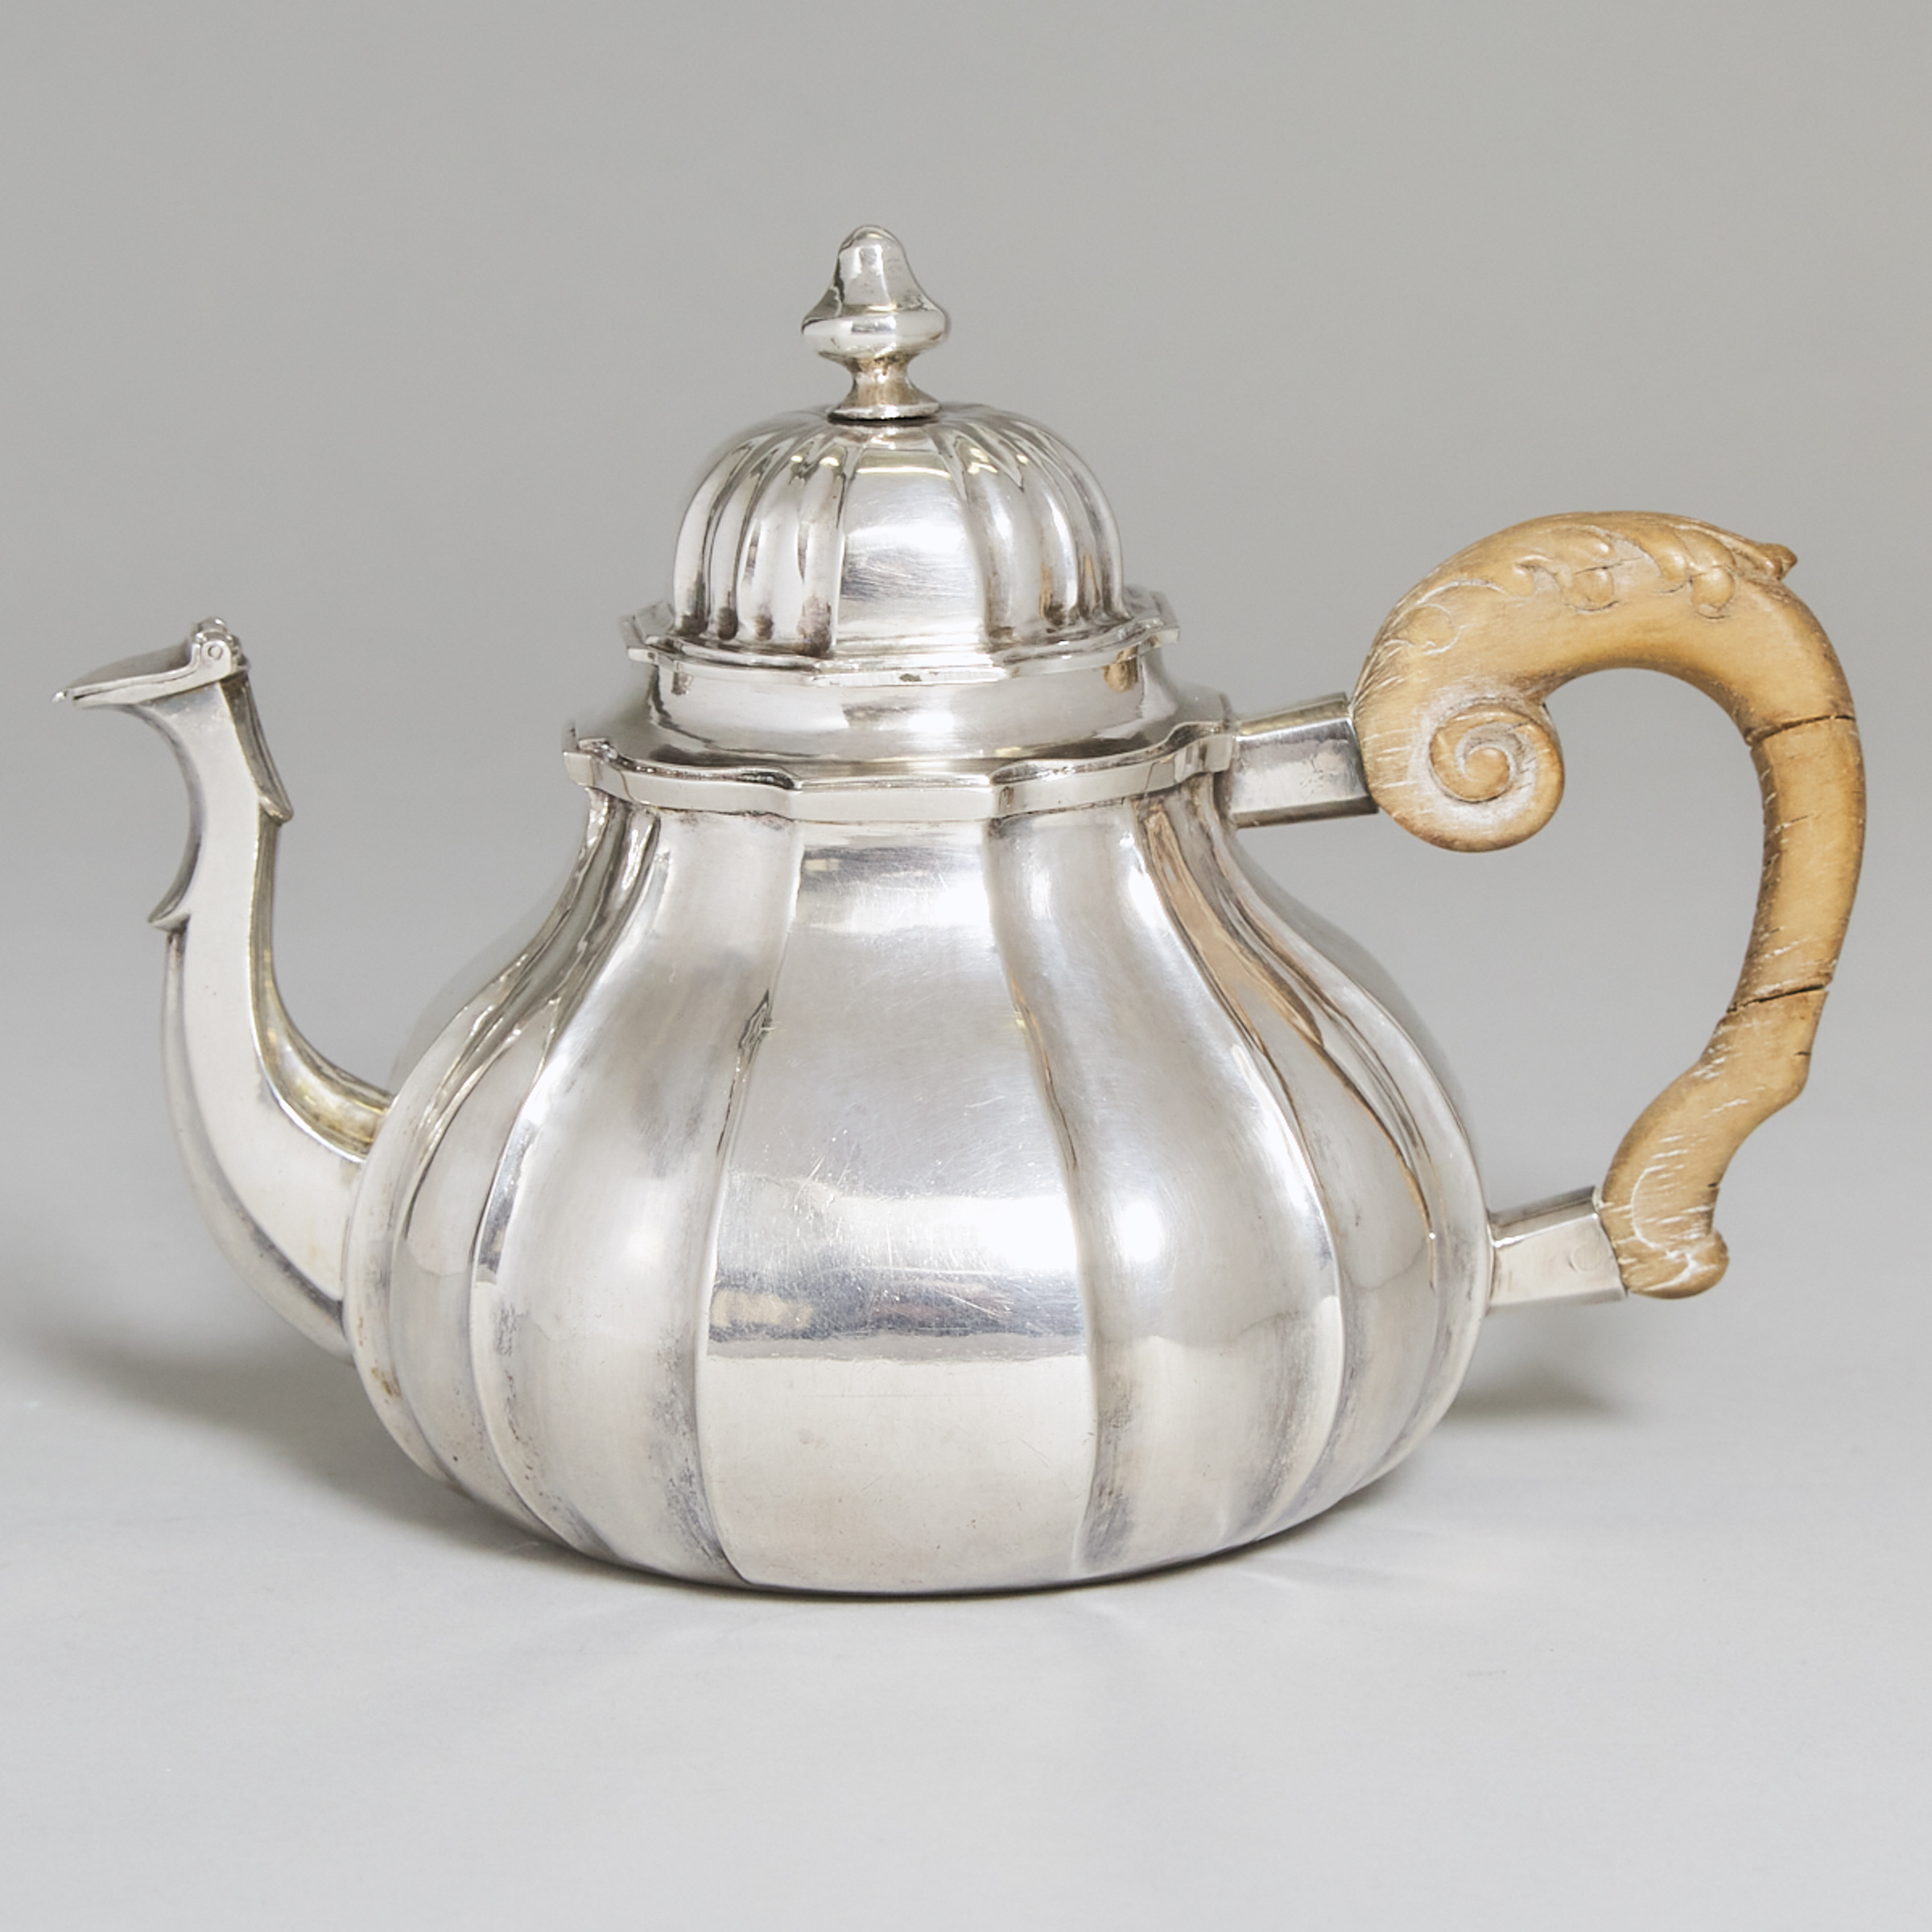 German Silver Teapot, Esaias Busch, Augsburg, c.1730